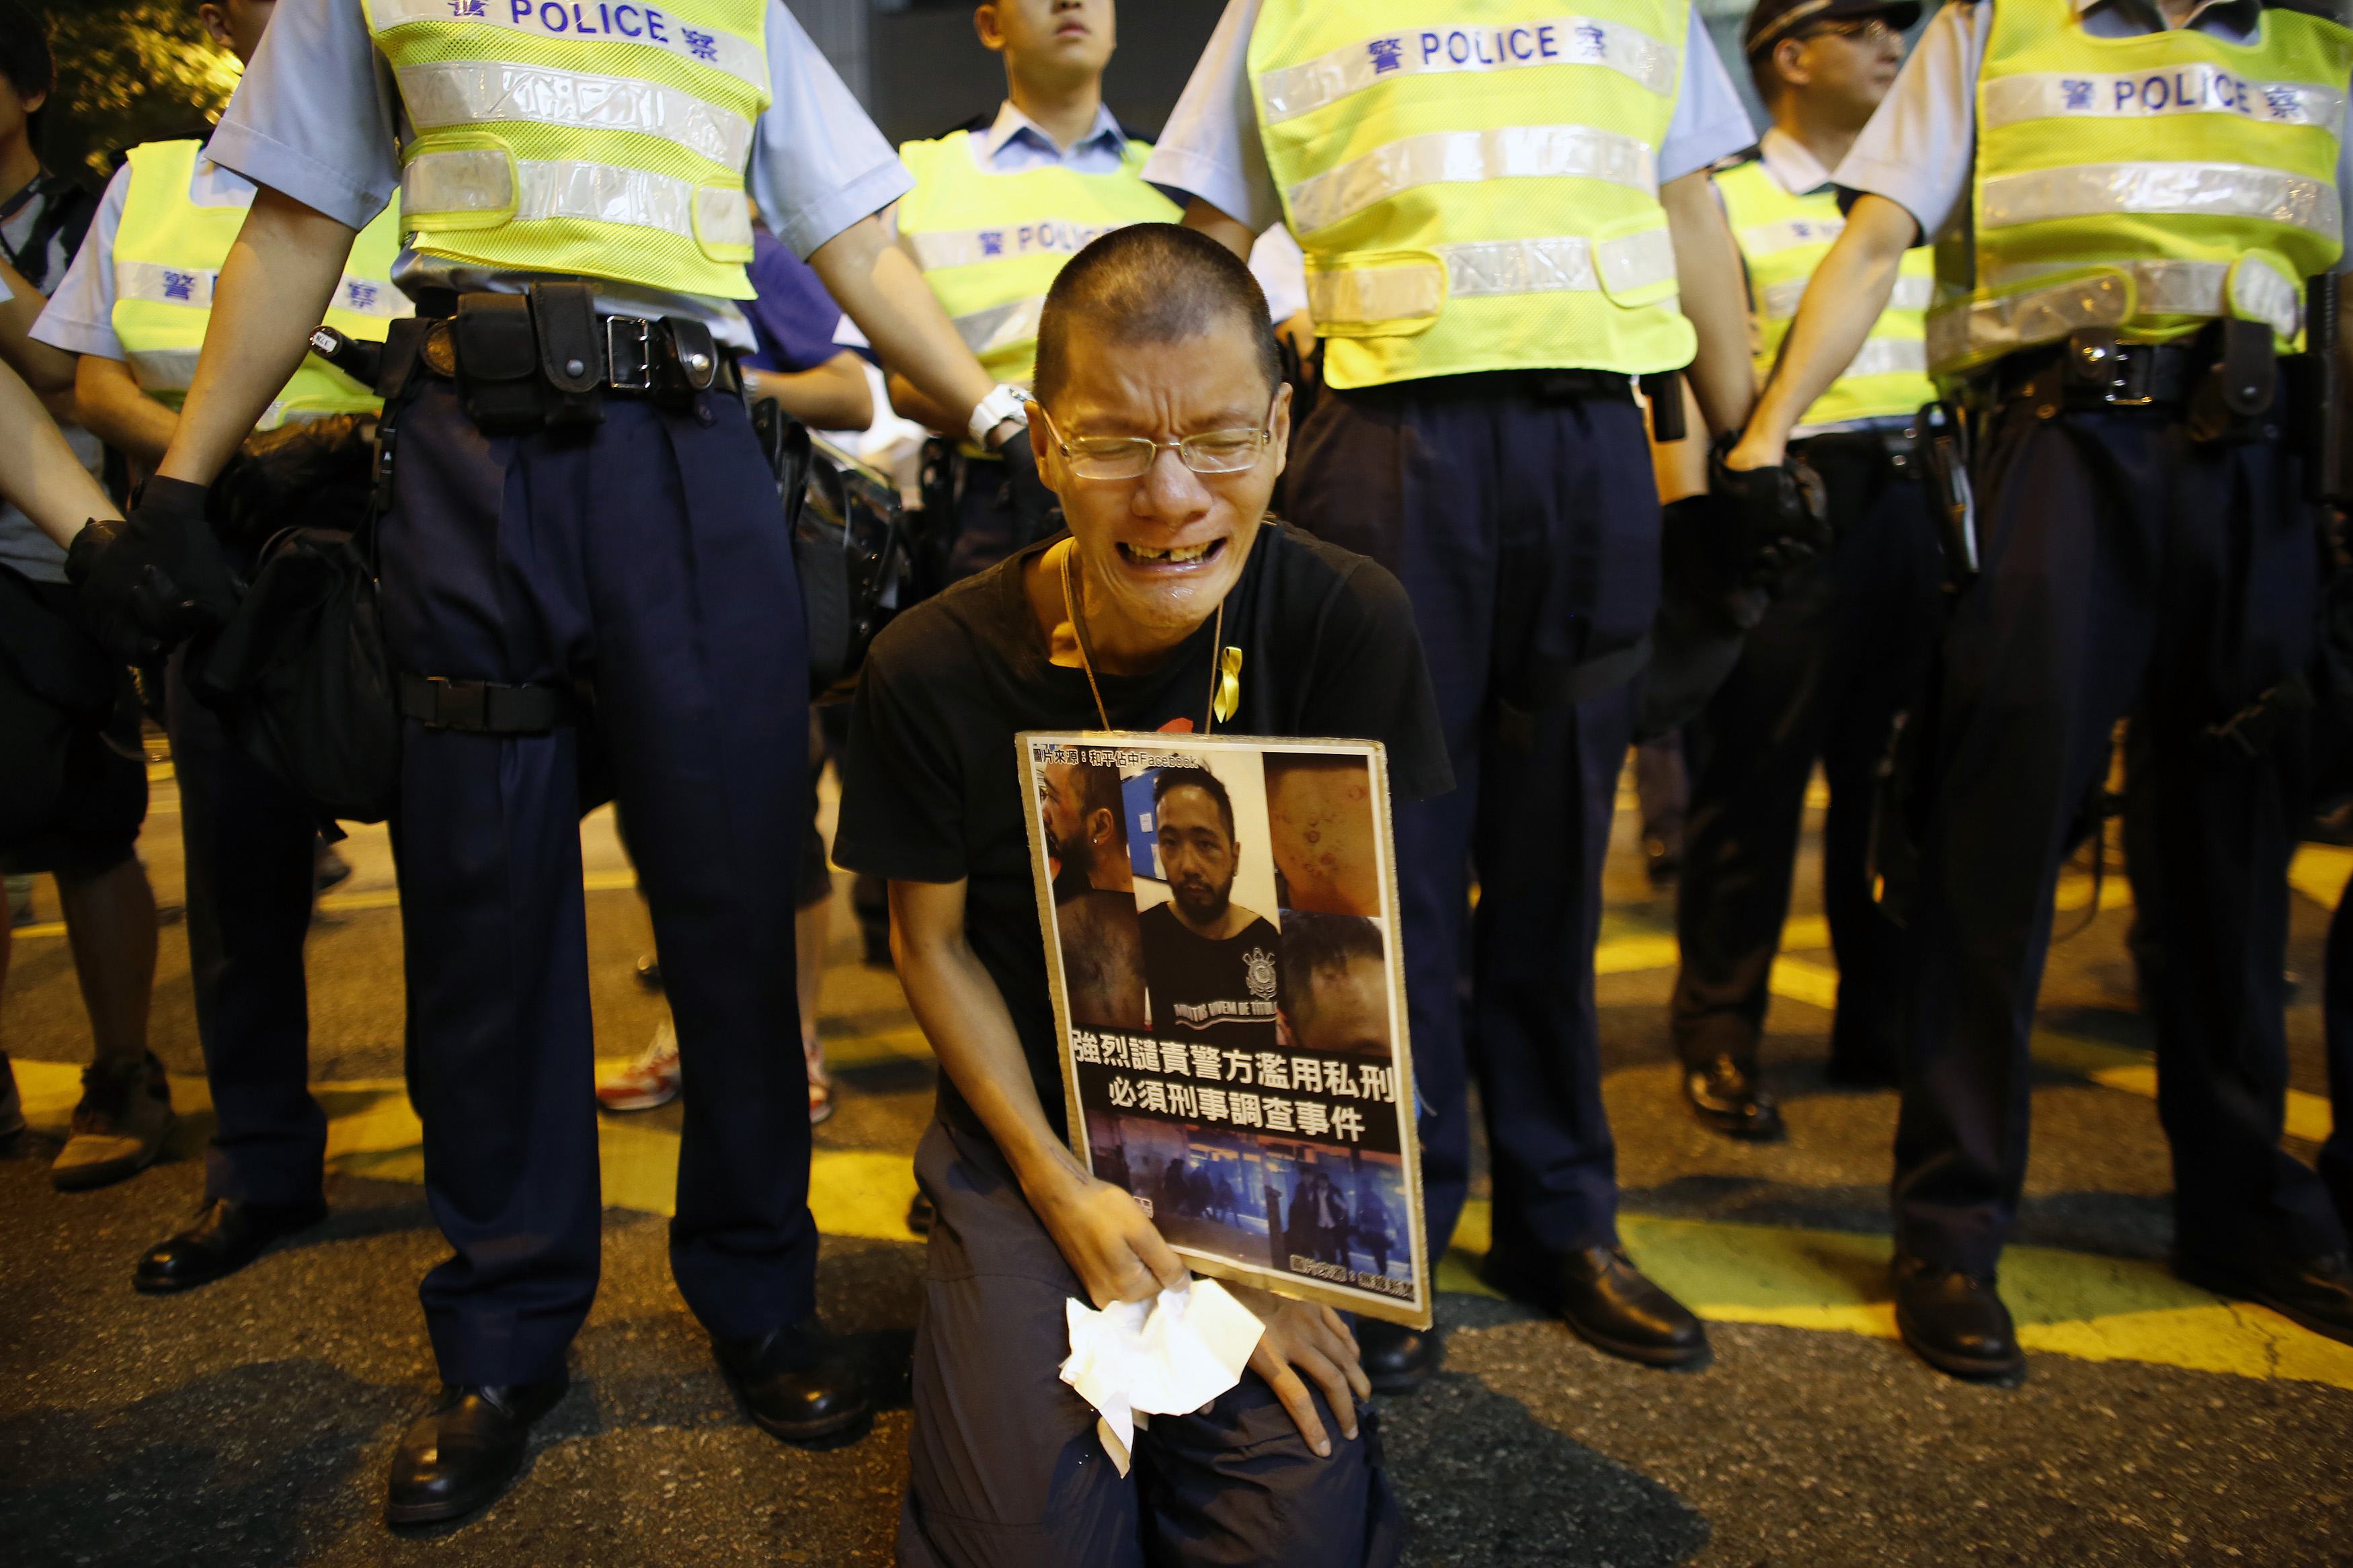 Người đàn ông cầm bức ảnh miêu tả Tằng Giang, thành viên của Đảng Dân sự bị các nhân viên cảnh sát mặc thường phục đánh đập tại khu vực biểu tình chính ở huyện Admiralty, Hồng Kông vào ngày 23/10/2014. Sau cuộc điều tra, 7 nhân viên an ninh tham gia đánh đập đã bị bắt vào hôm 26/11. (Ảnh: Internet)